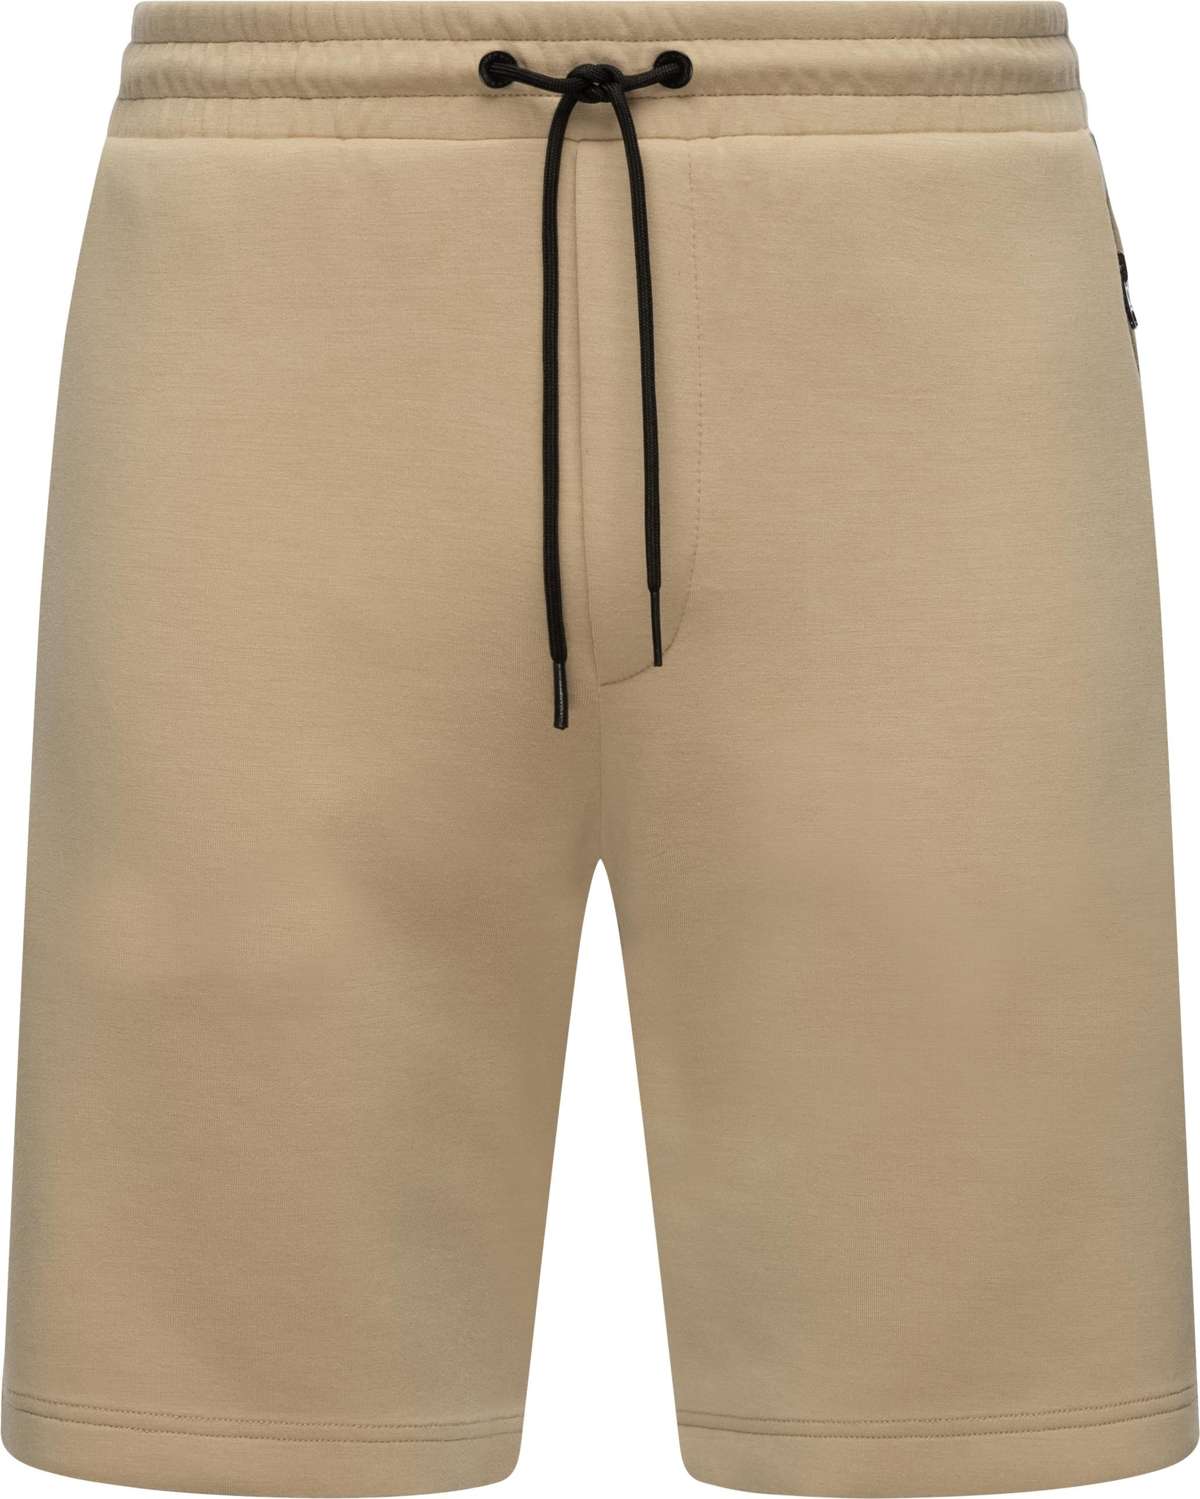 Шорты, (1 шт.), модные короткие мужские спортивные штаны.